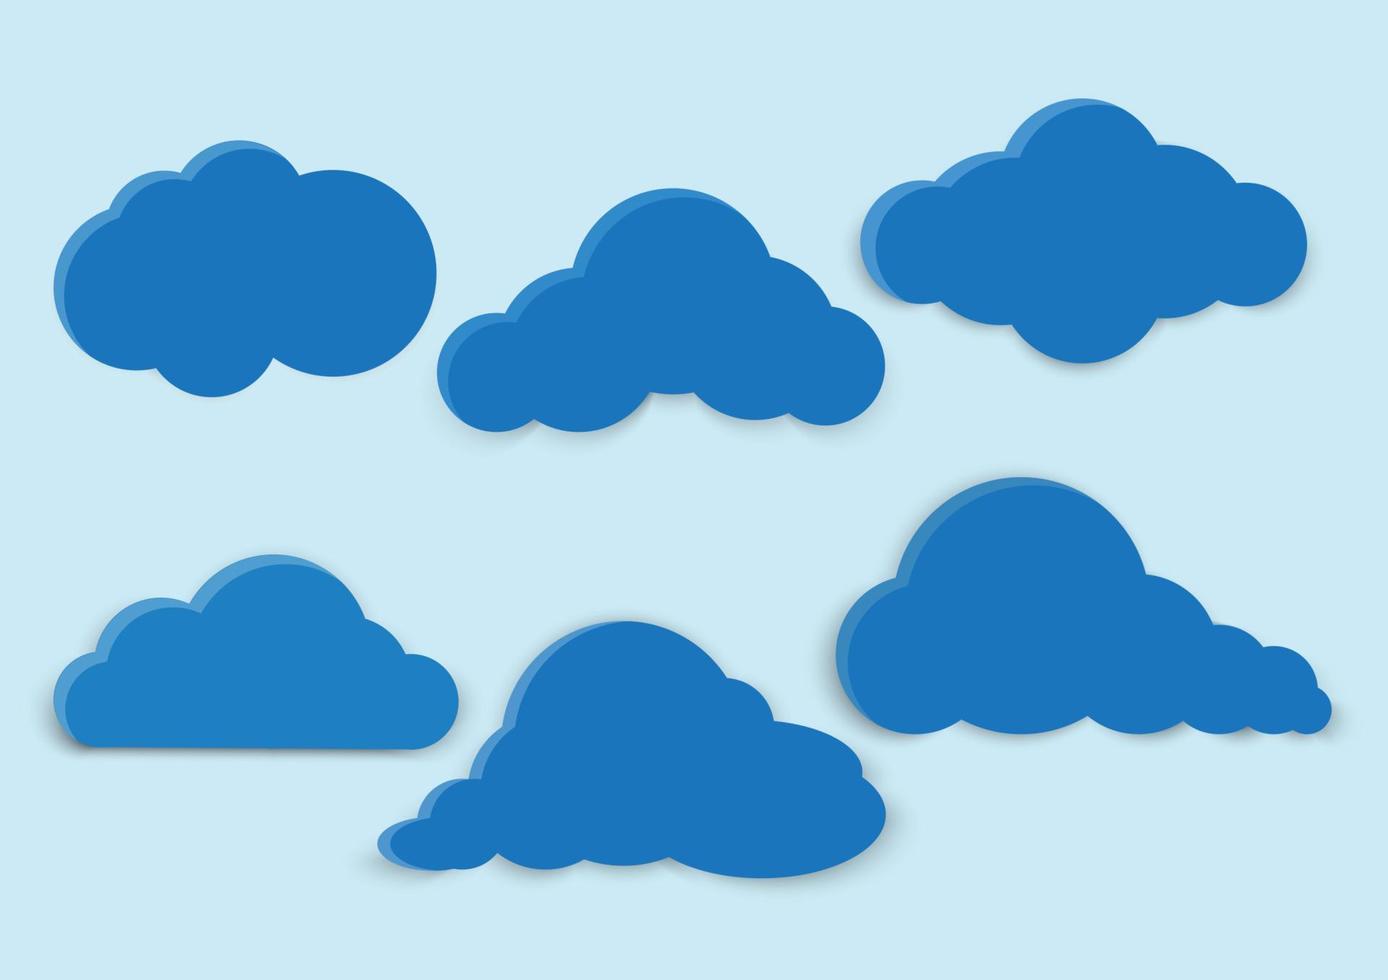 verschiedene Formen von Wolken auf verschiedenen Ebenen des blauen Hintergrunds vektor